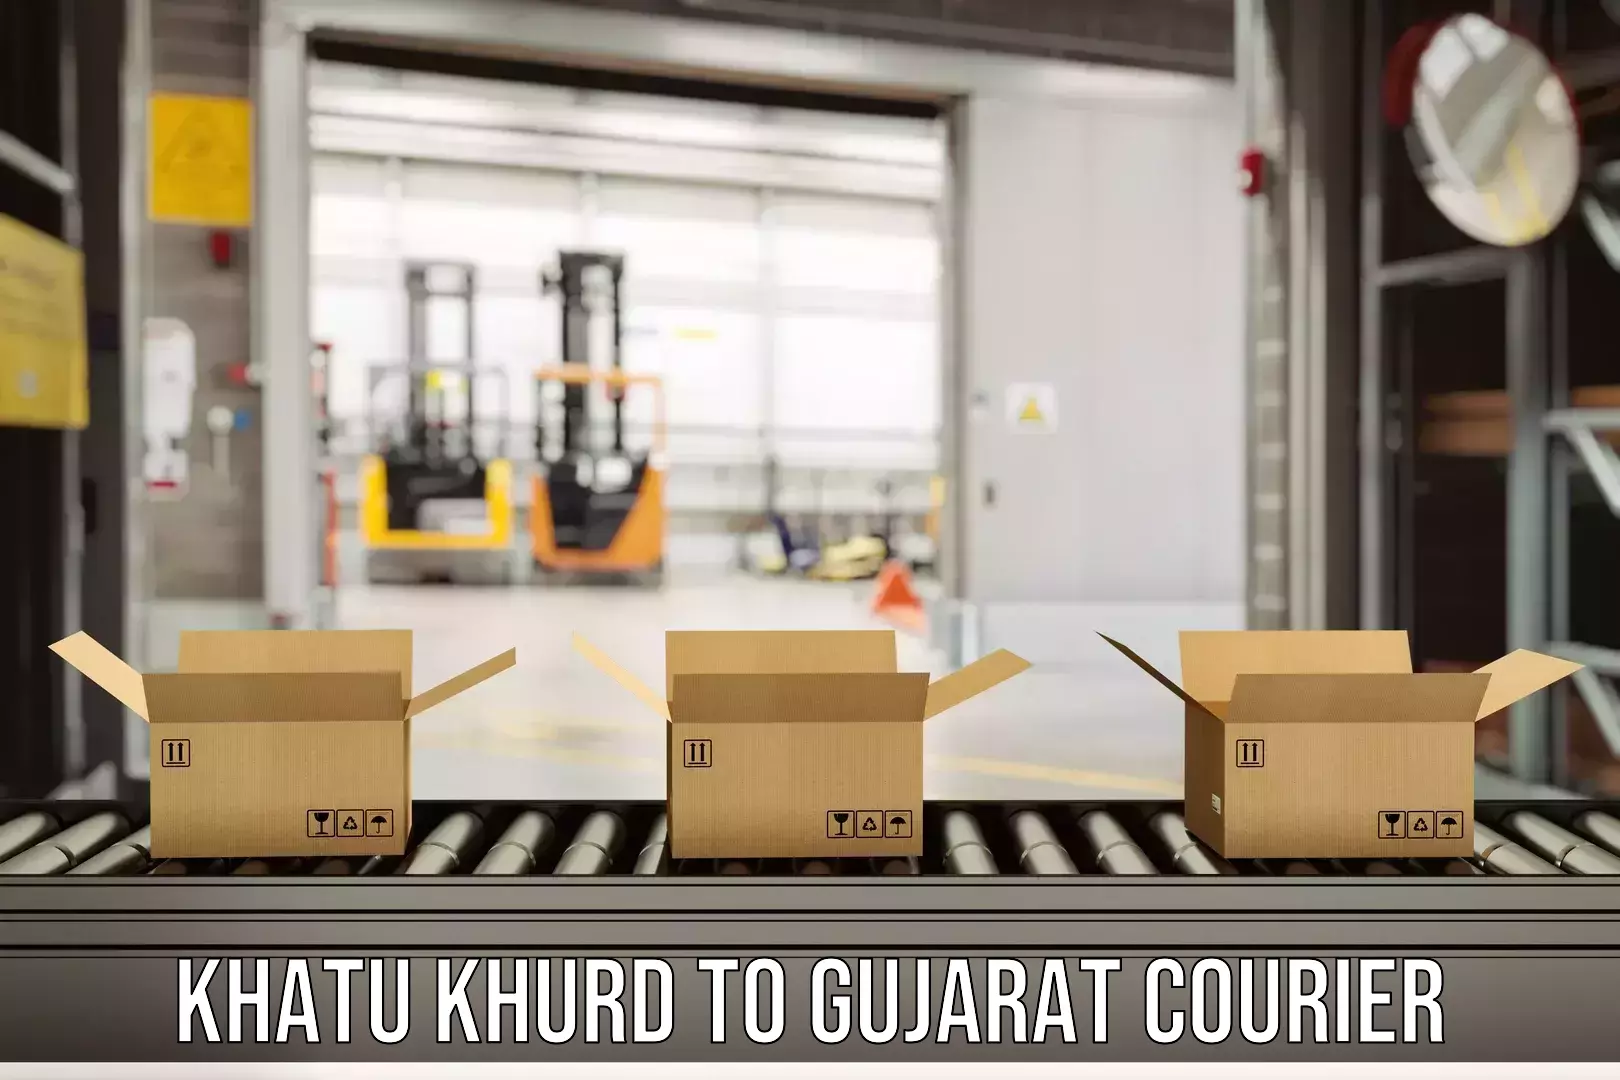 Global shipping networks Khatu Khurd to Dholka